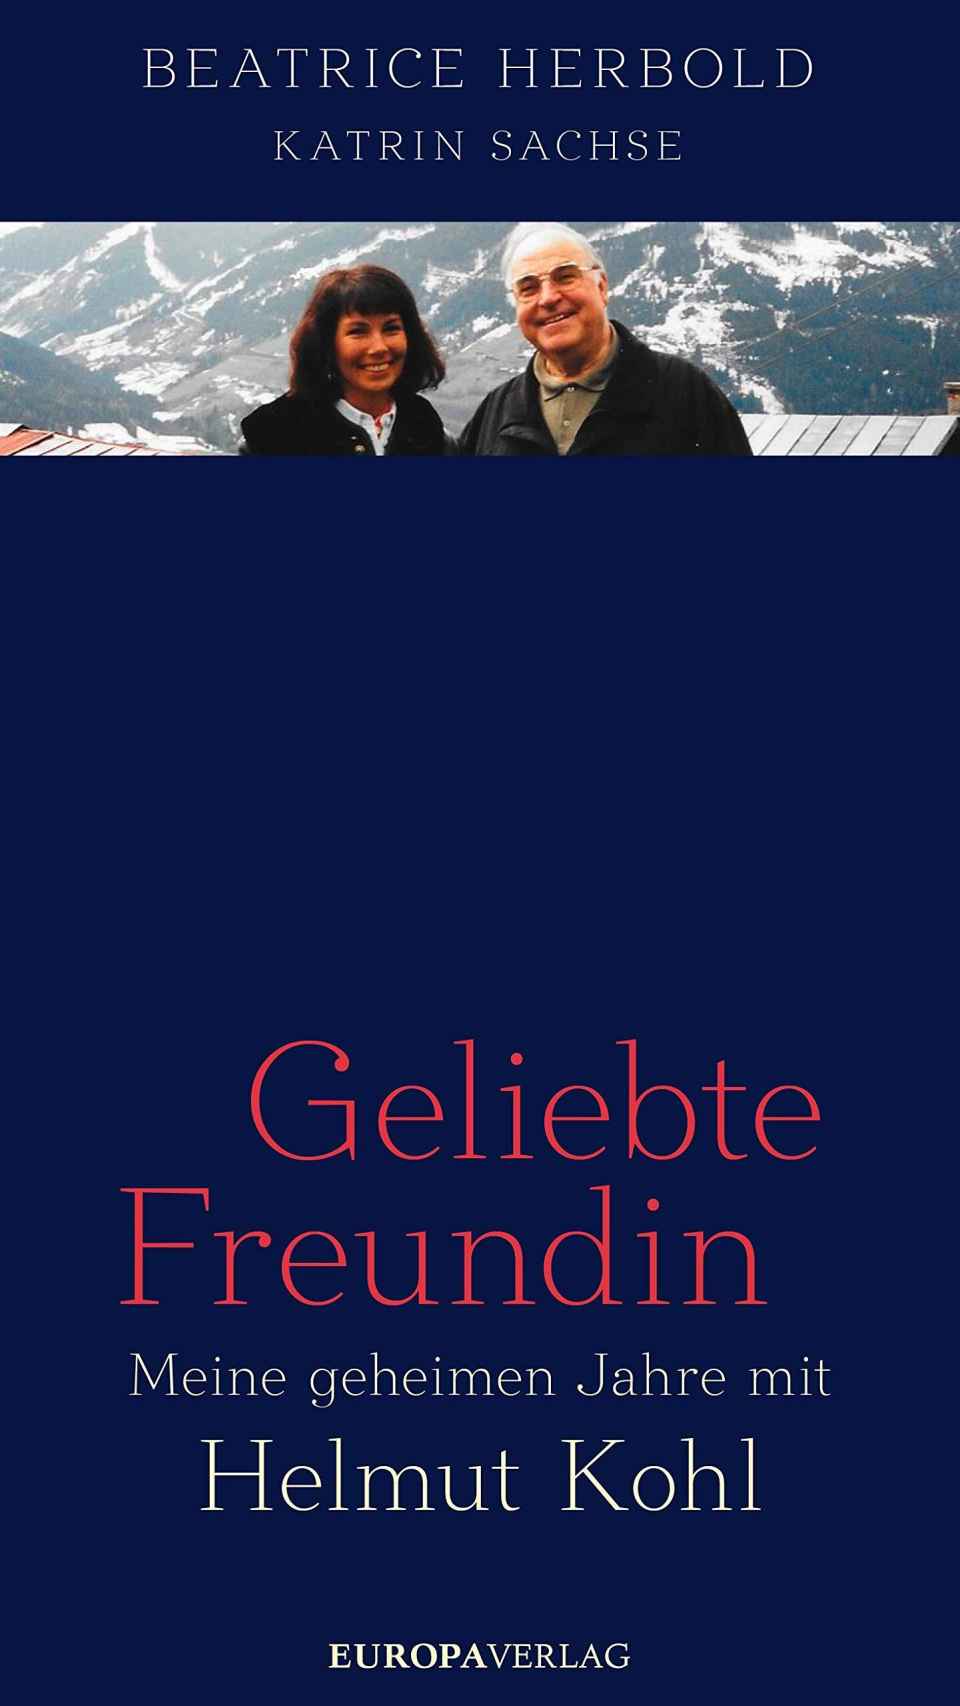 Portada de 'Geliebte Freundin. Meine geheimen Jahre mit Helmut Kohl'.